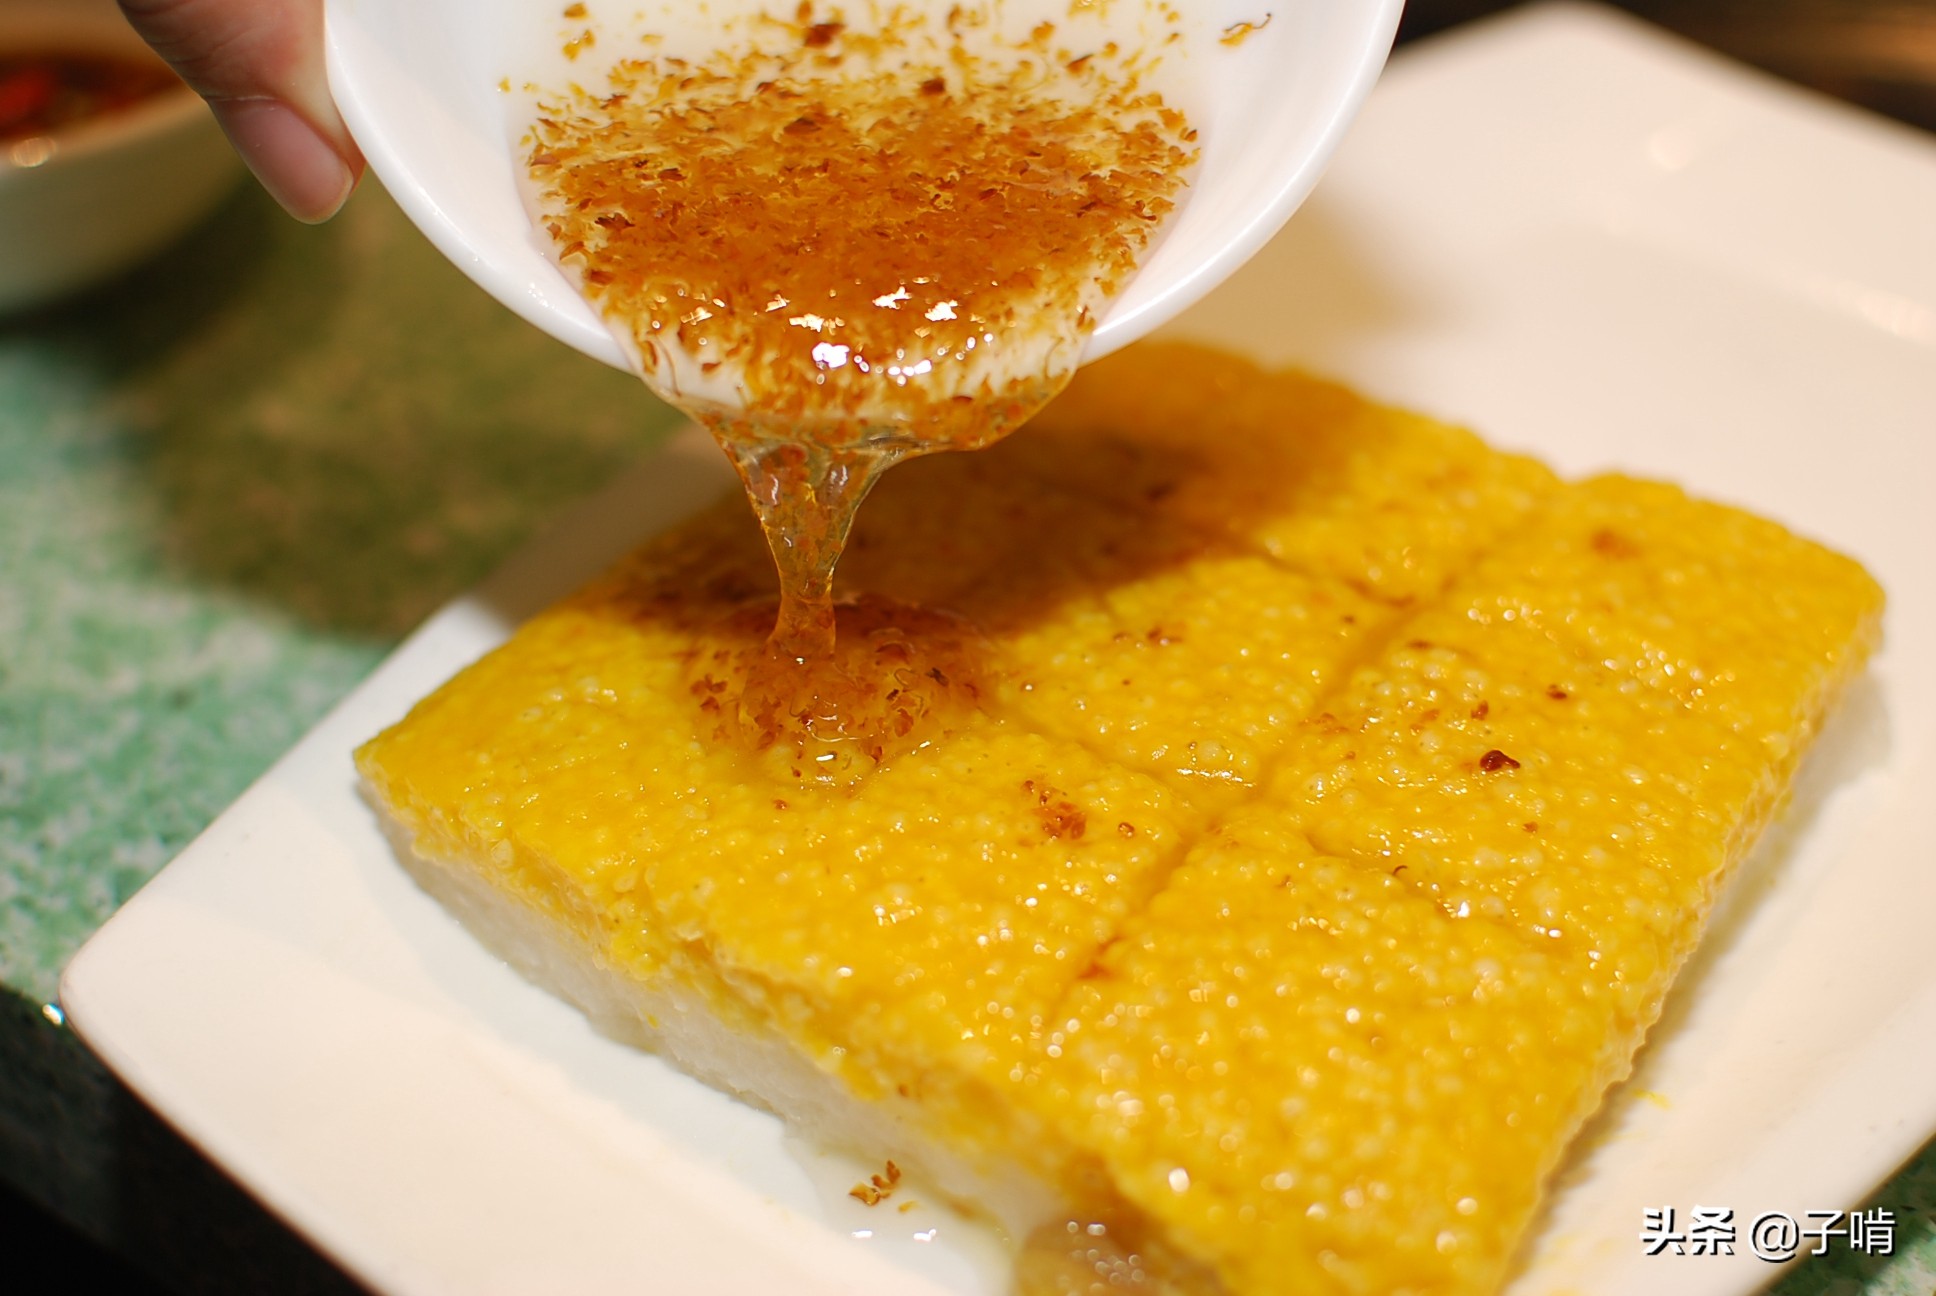 大黄米美味团圆汤圆食材摄影图配图高清摄影大图-千库网